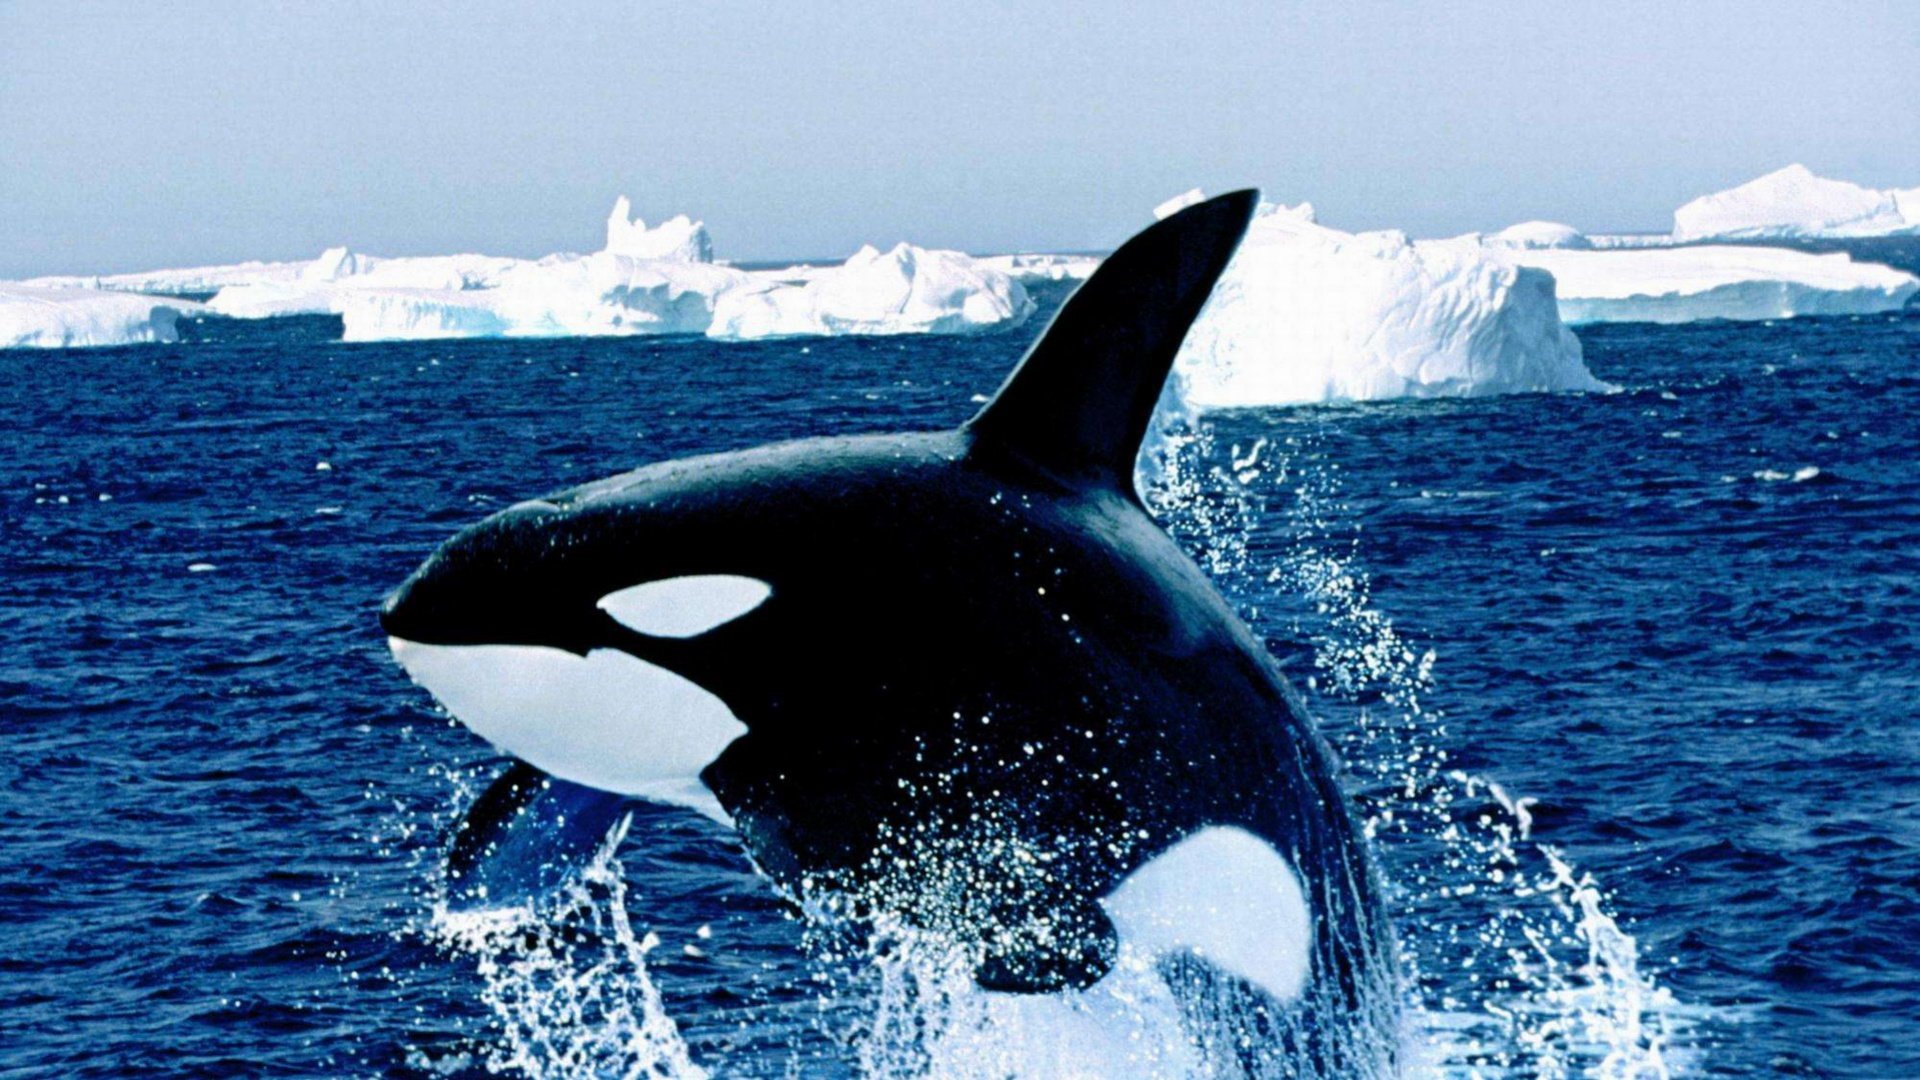 虎鲸在南极洲在冬天 库存照片. 图片 包括有 在前, 海鸥, 海运, 岩石, 鲸鱼, 蓝色, 狮子, 危险 - 110009652